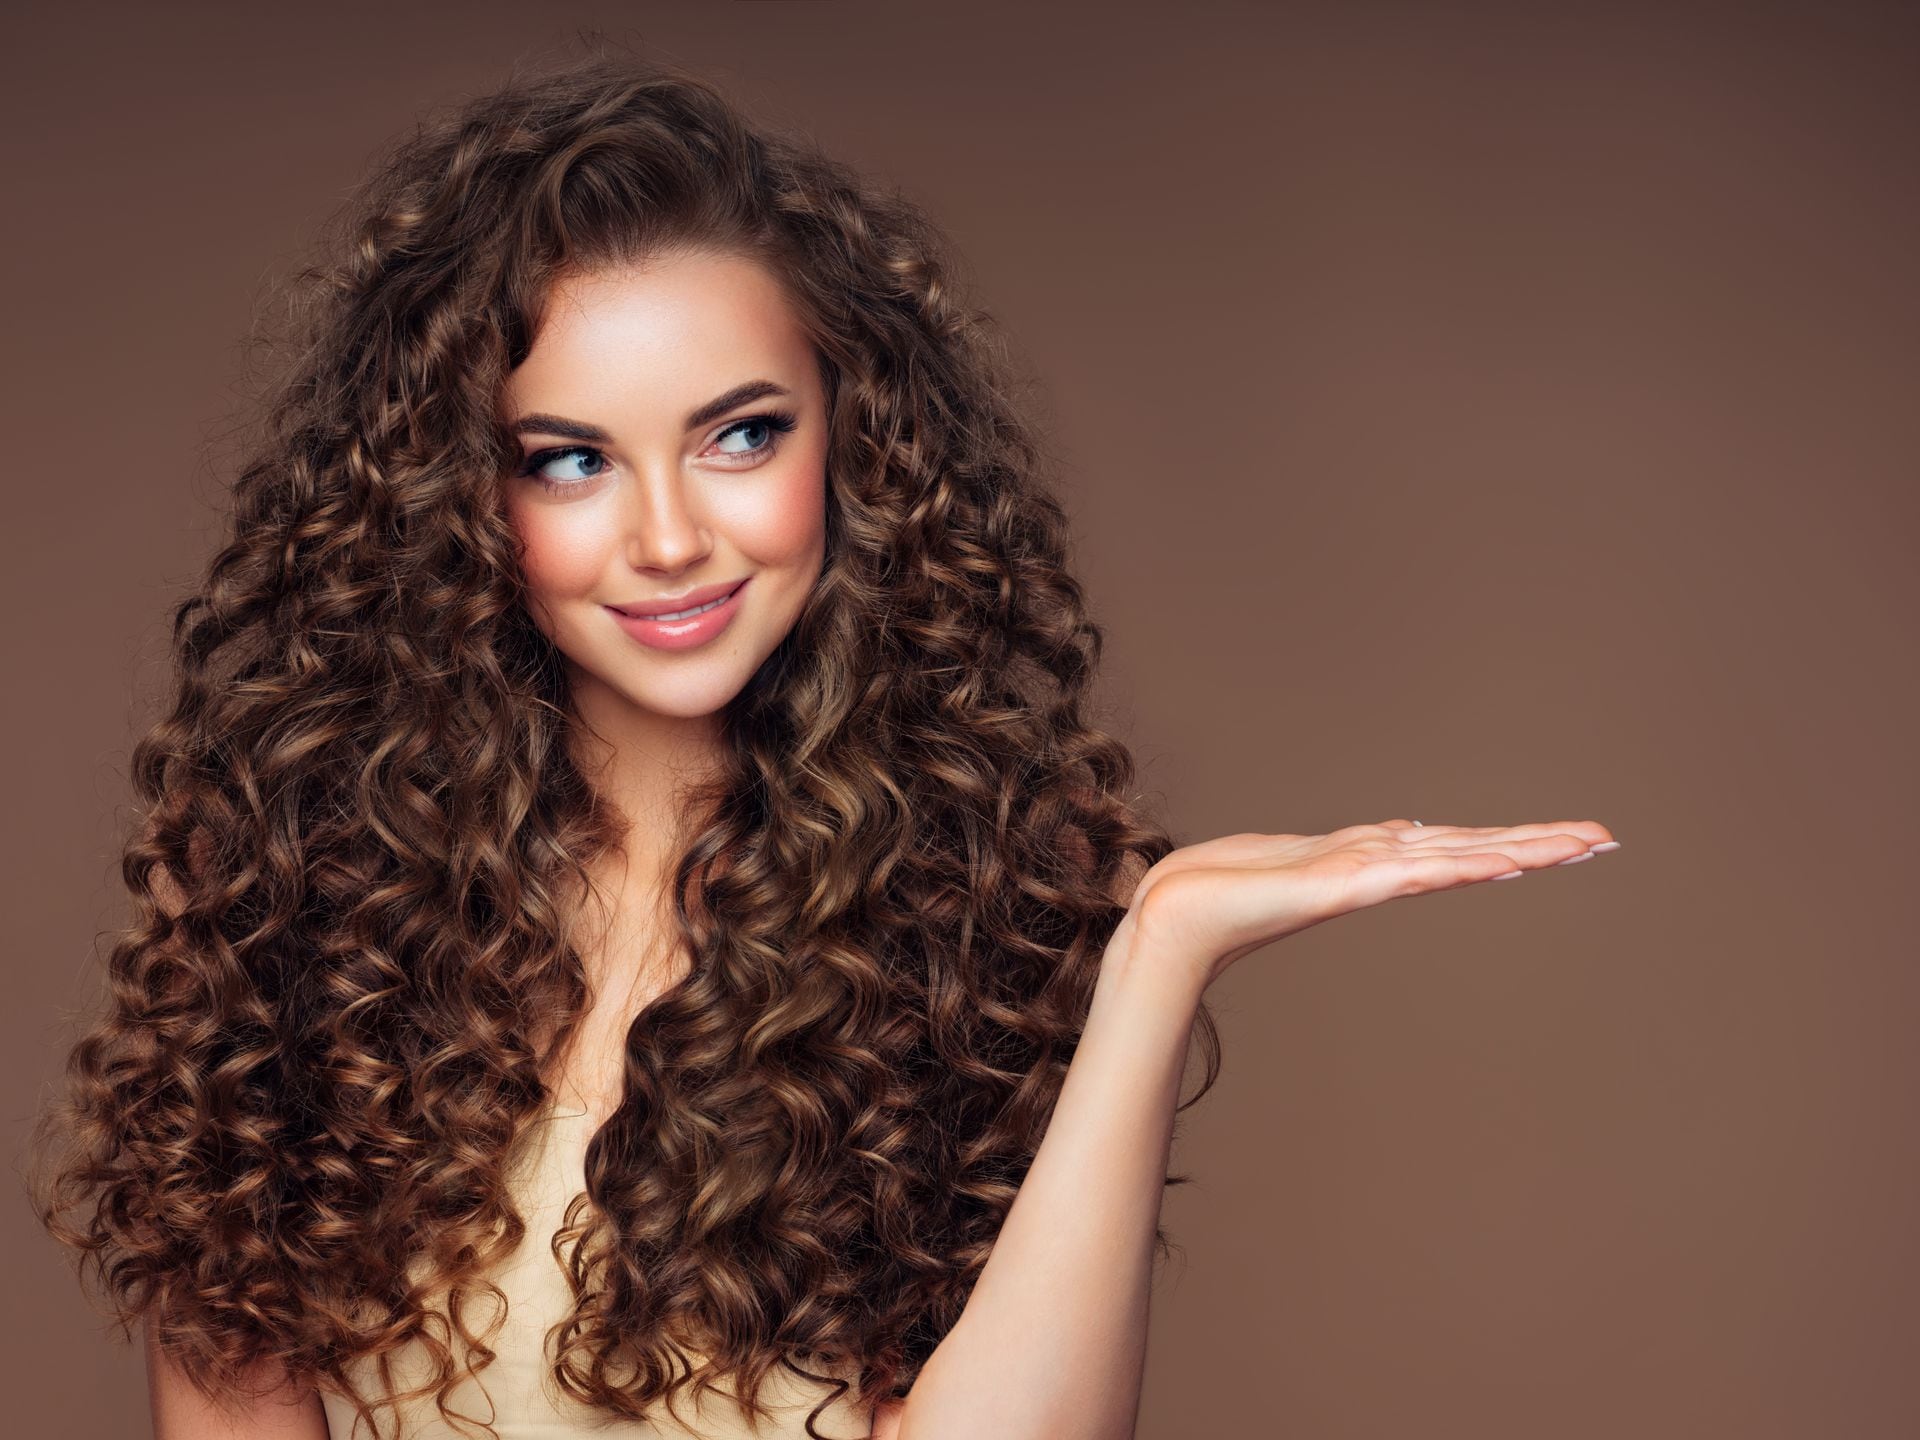 Cuidado del cabello: ¿cómo definir los rizos de manera natural?